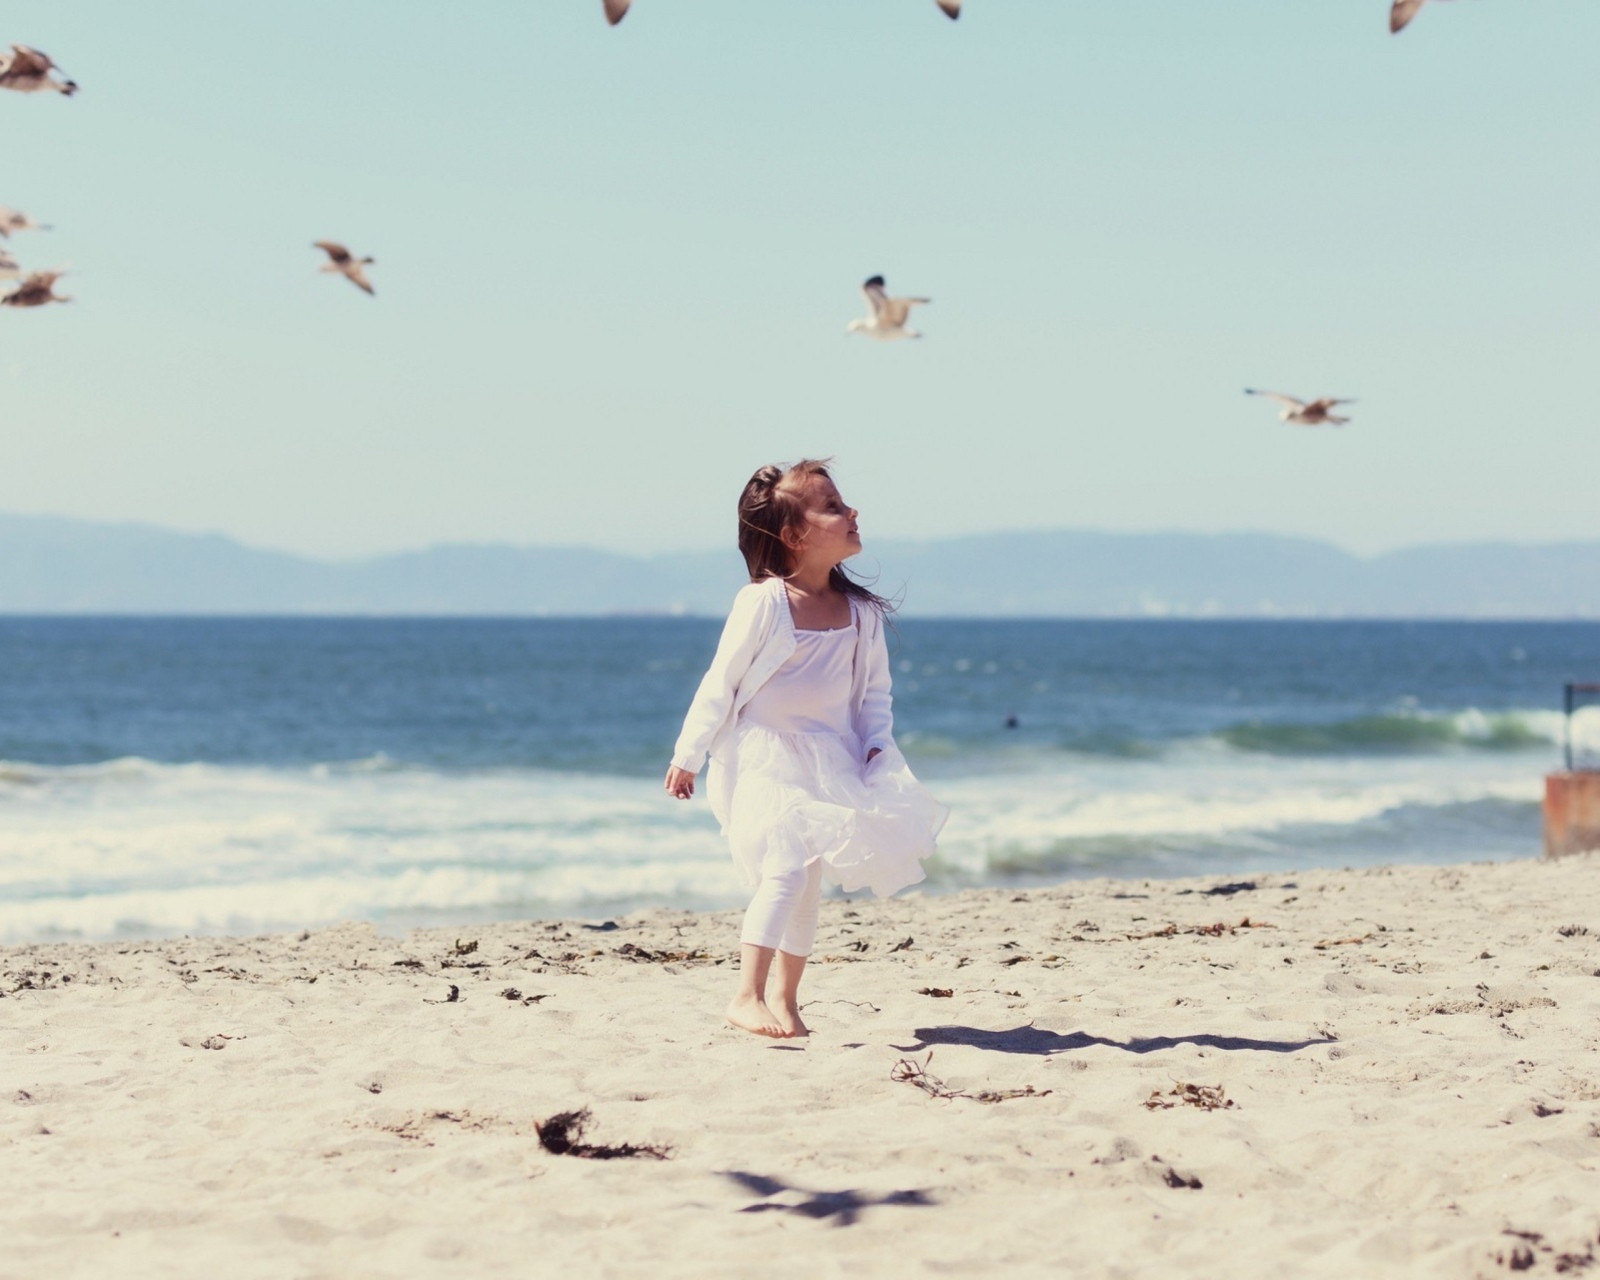 Little Girl At Beach And Seagulls screenshot #1 1600x1280